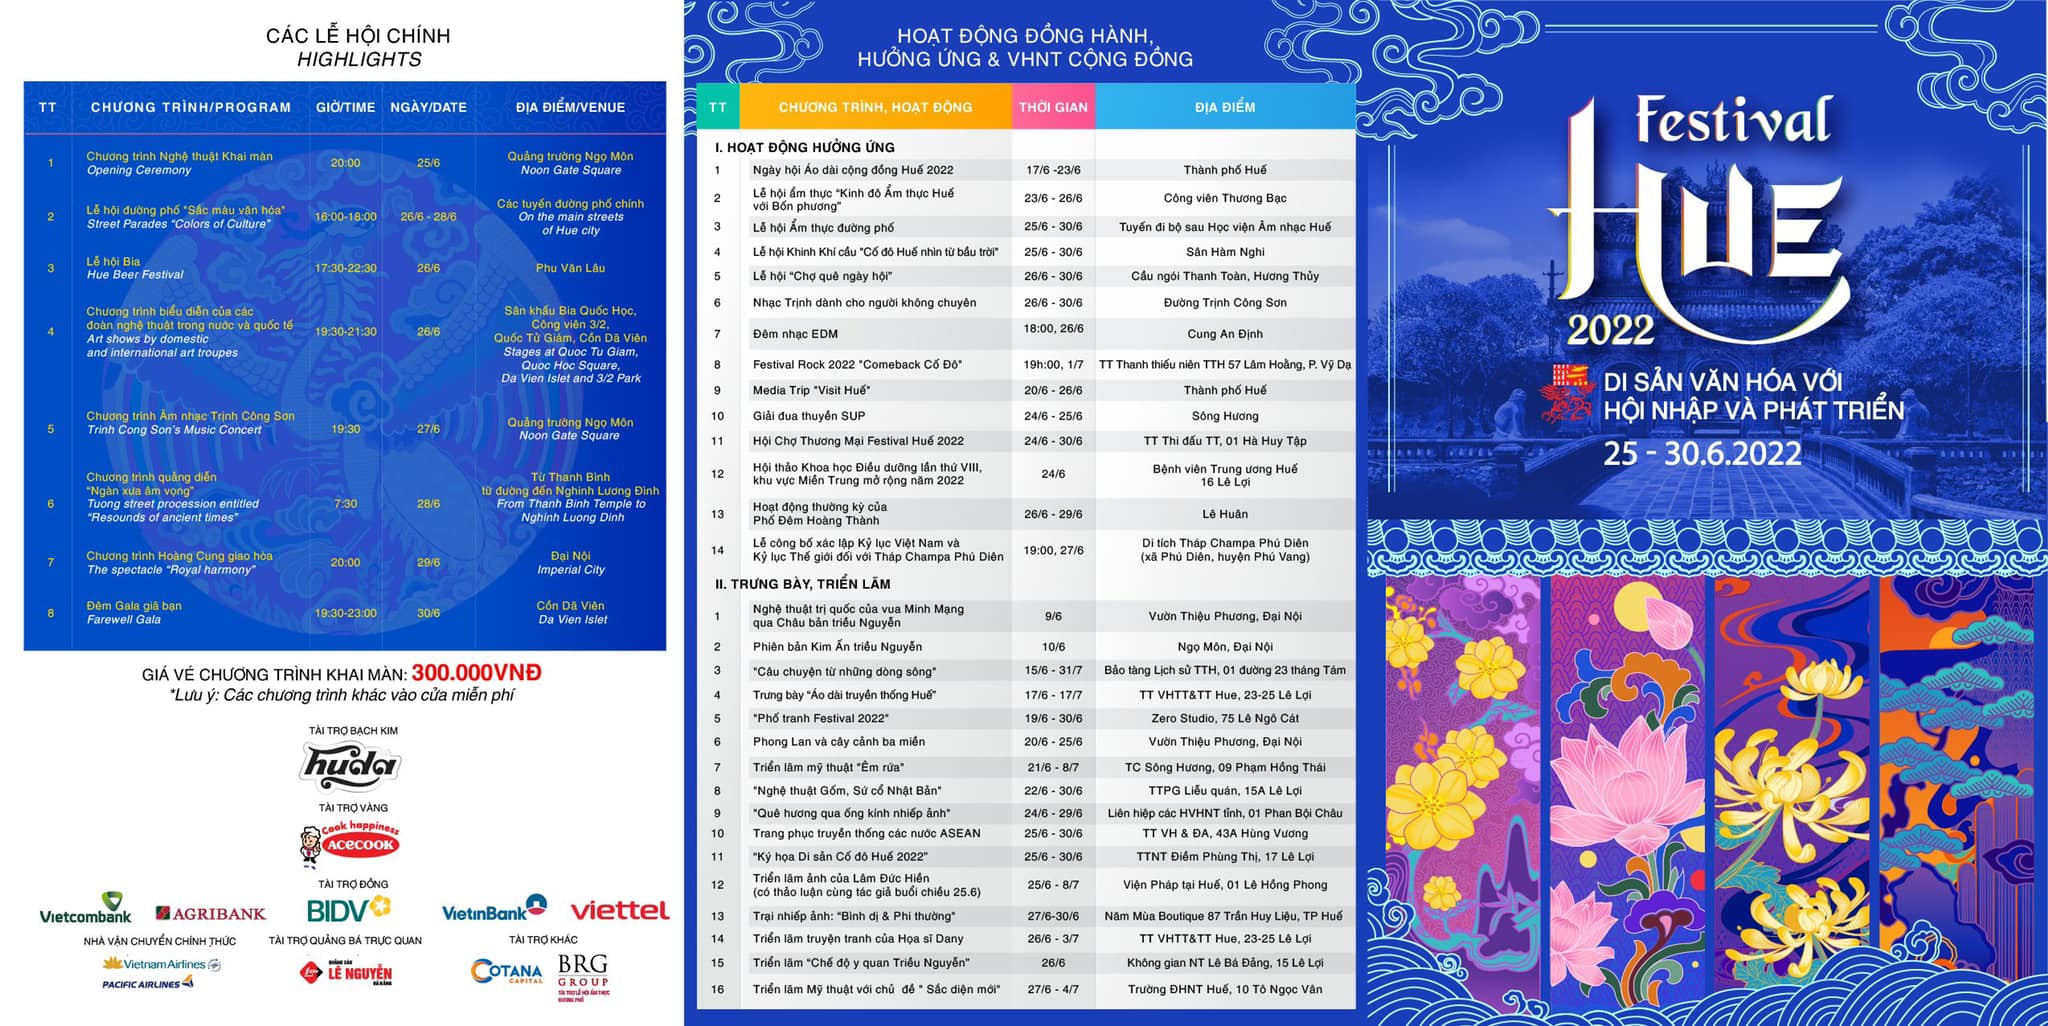 Các chương trình chính Tuần lễ Festival Huế 2022